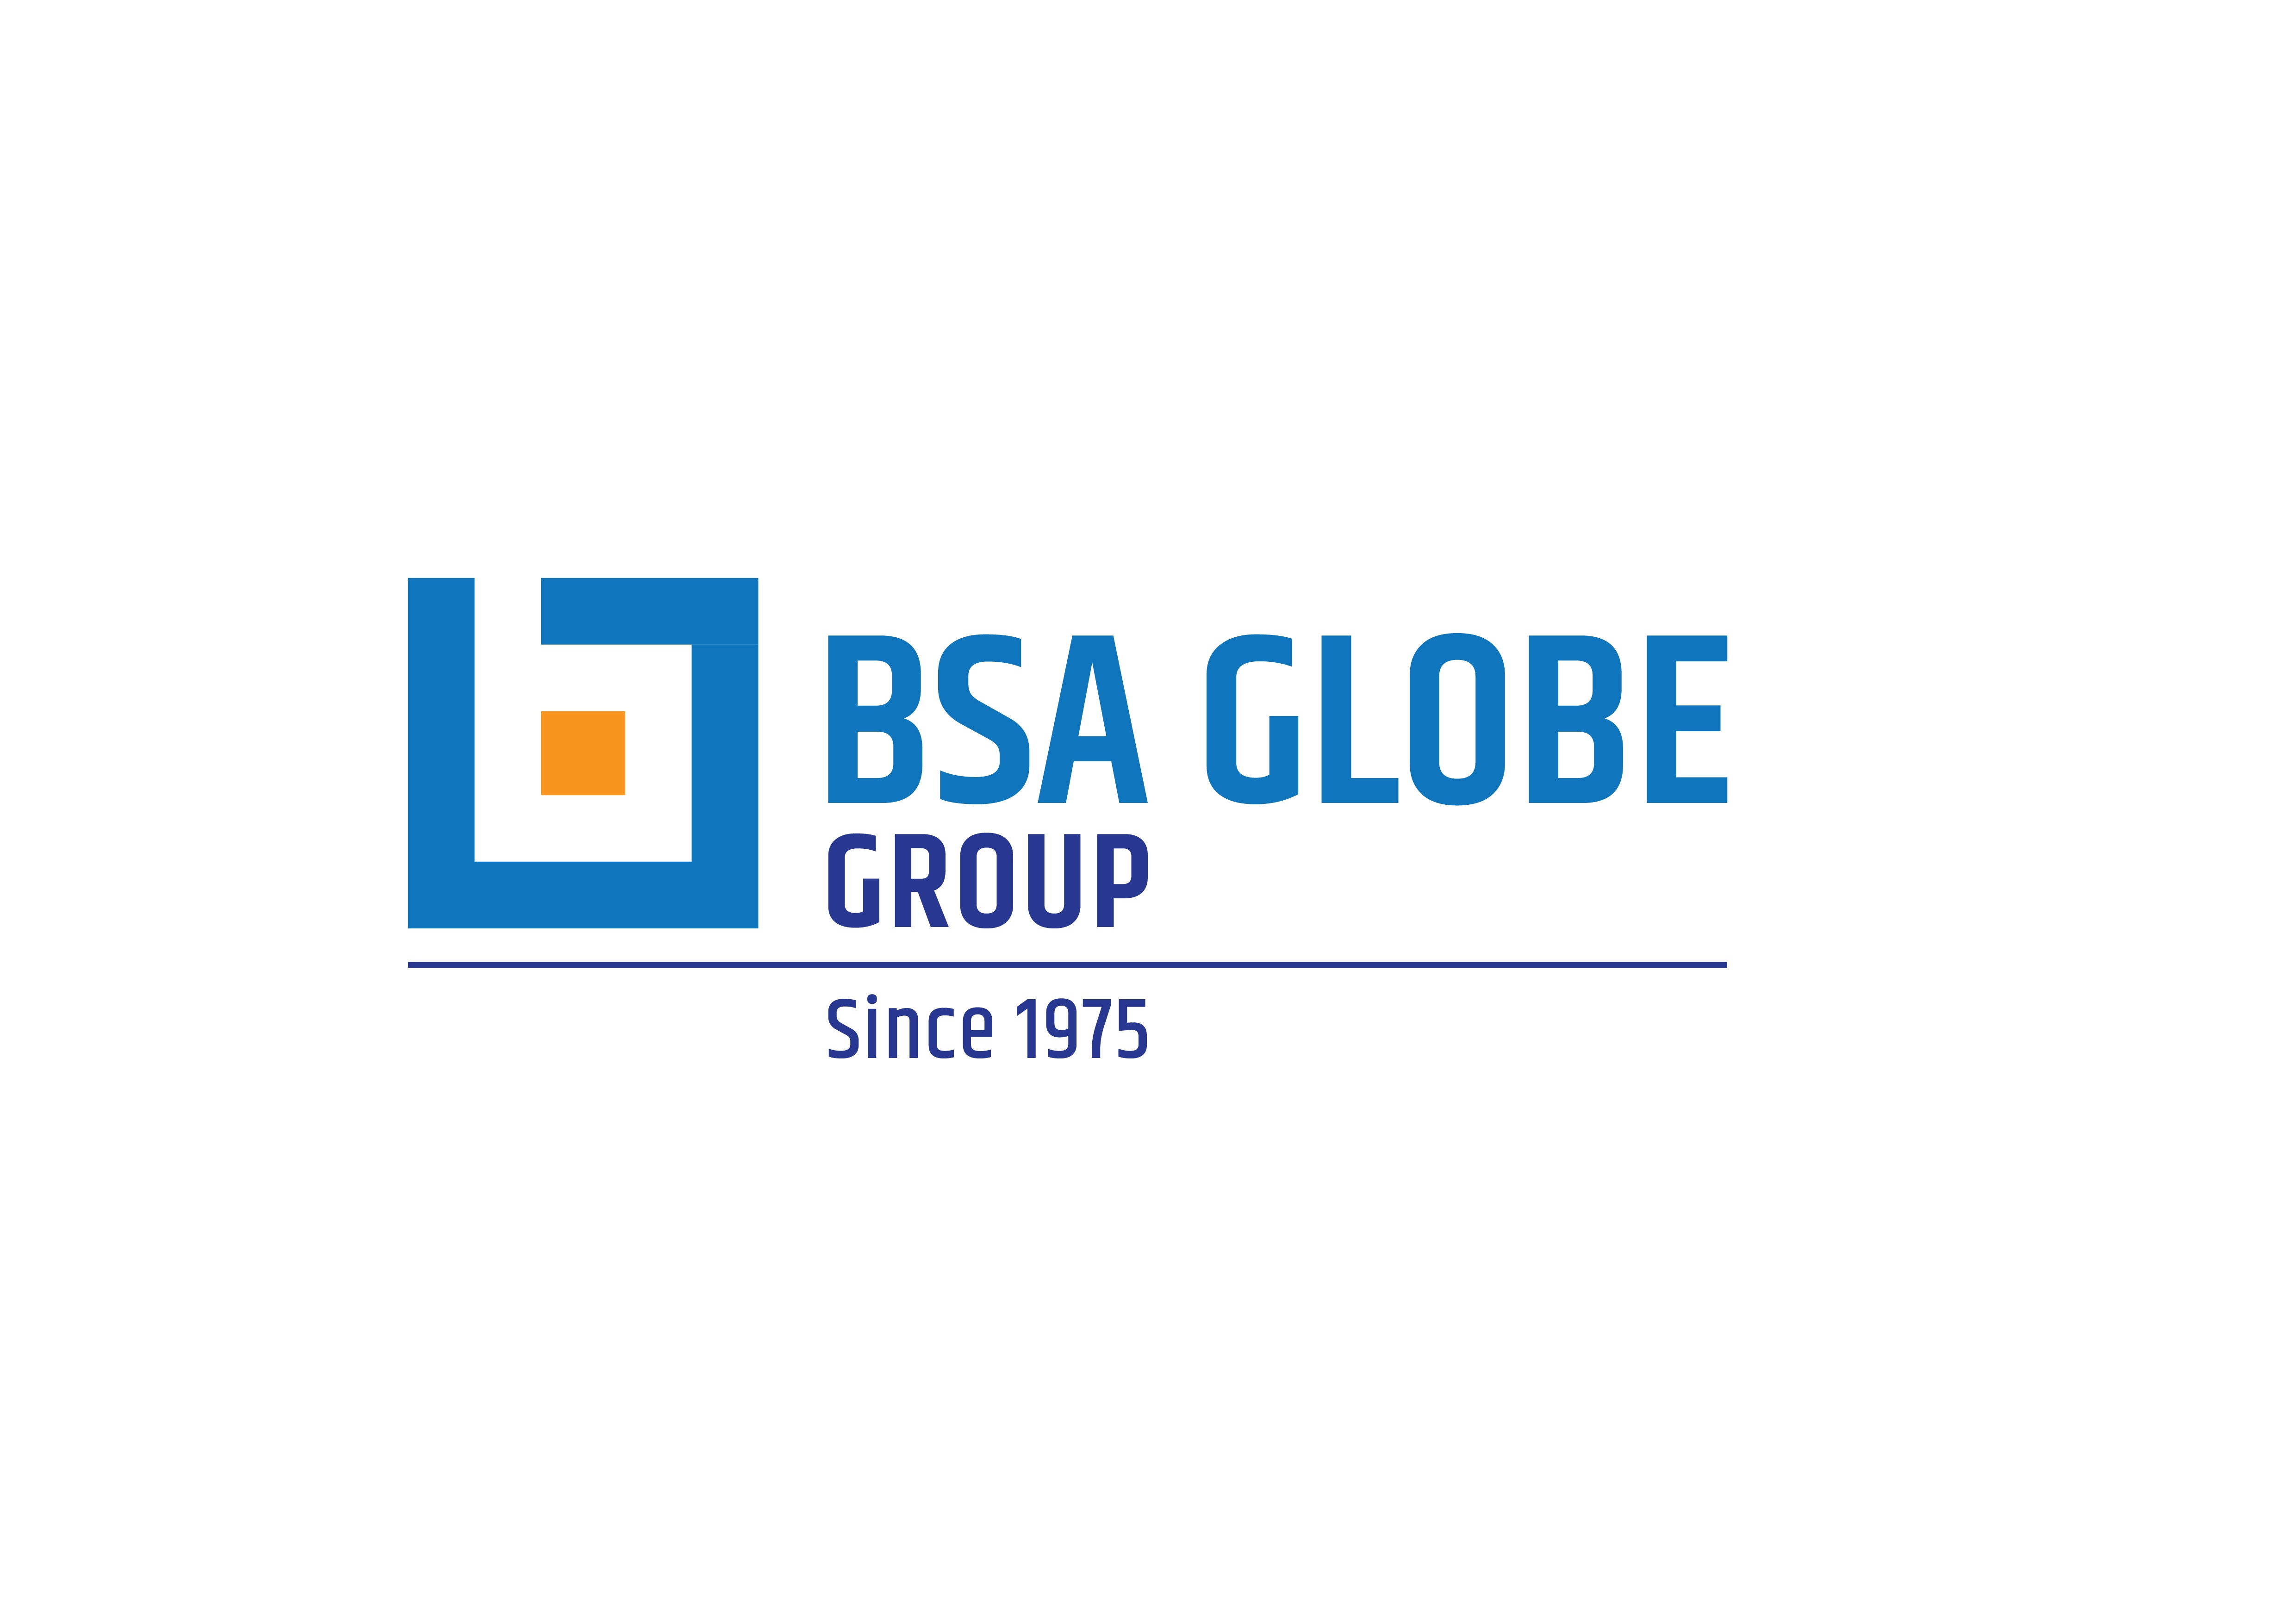 BSA Globe Group